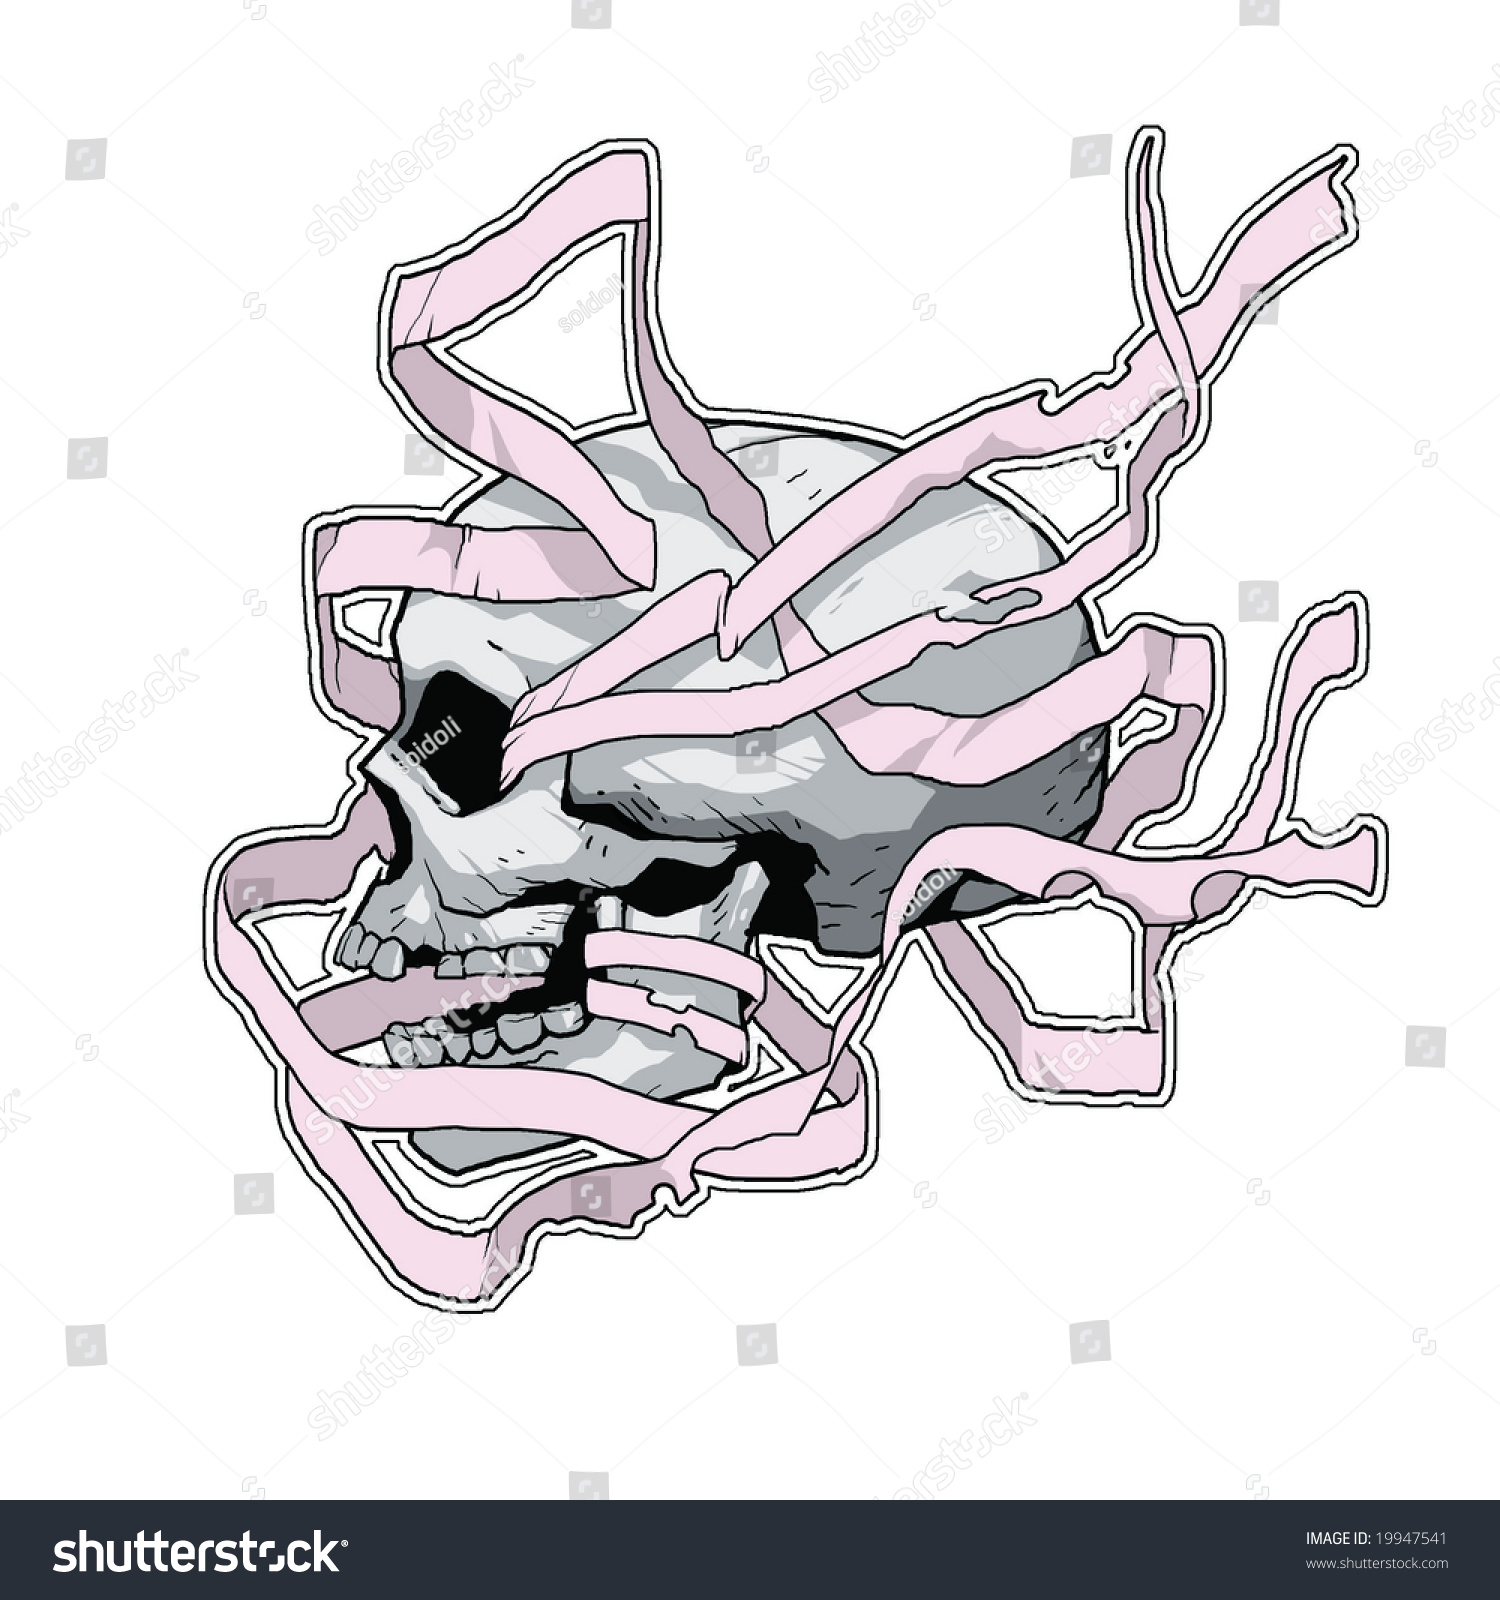 Skull Stock Vector Illustration 19947541 : Shutterstock